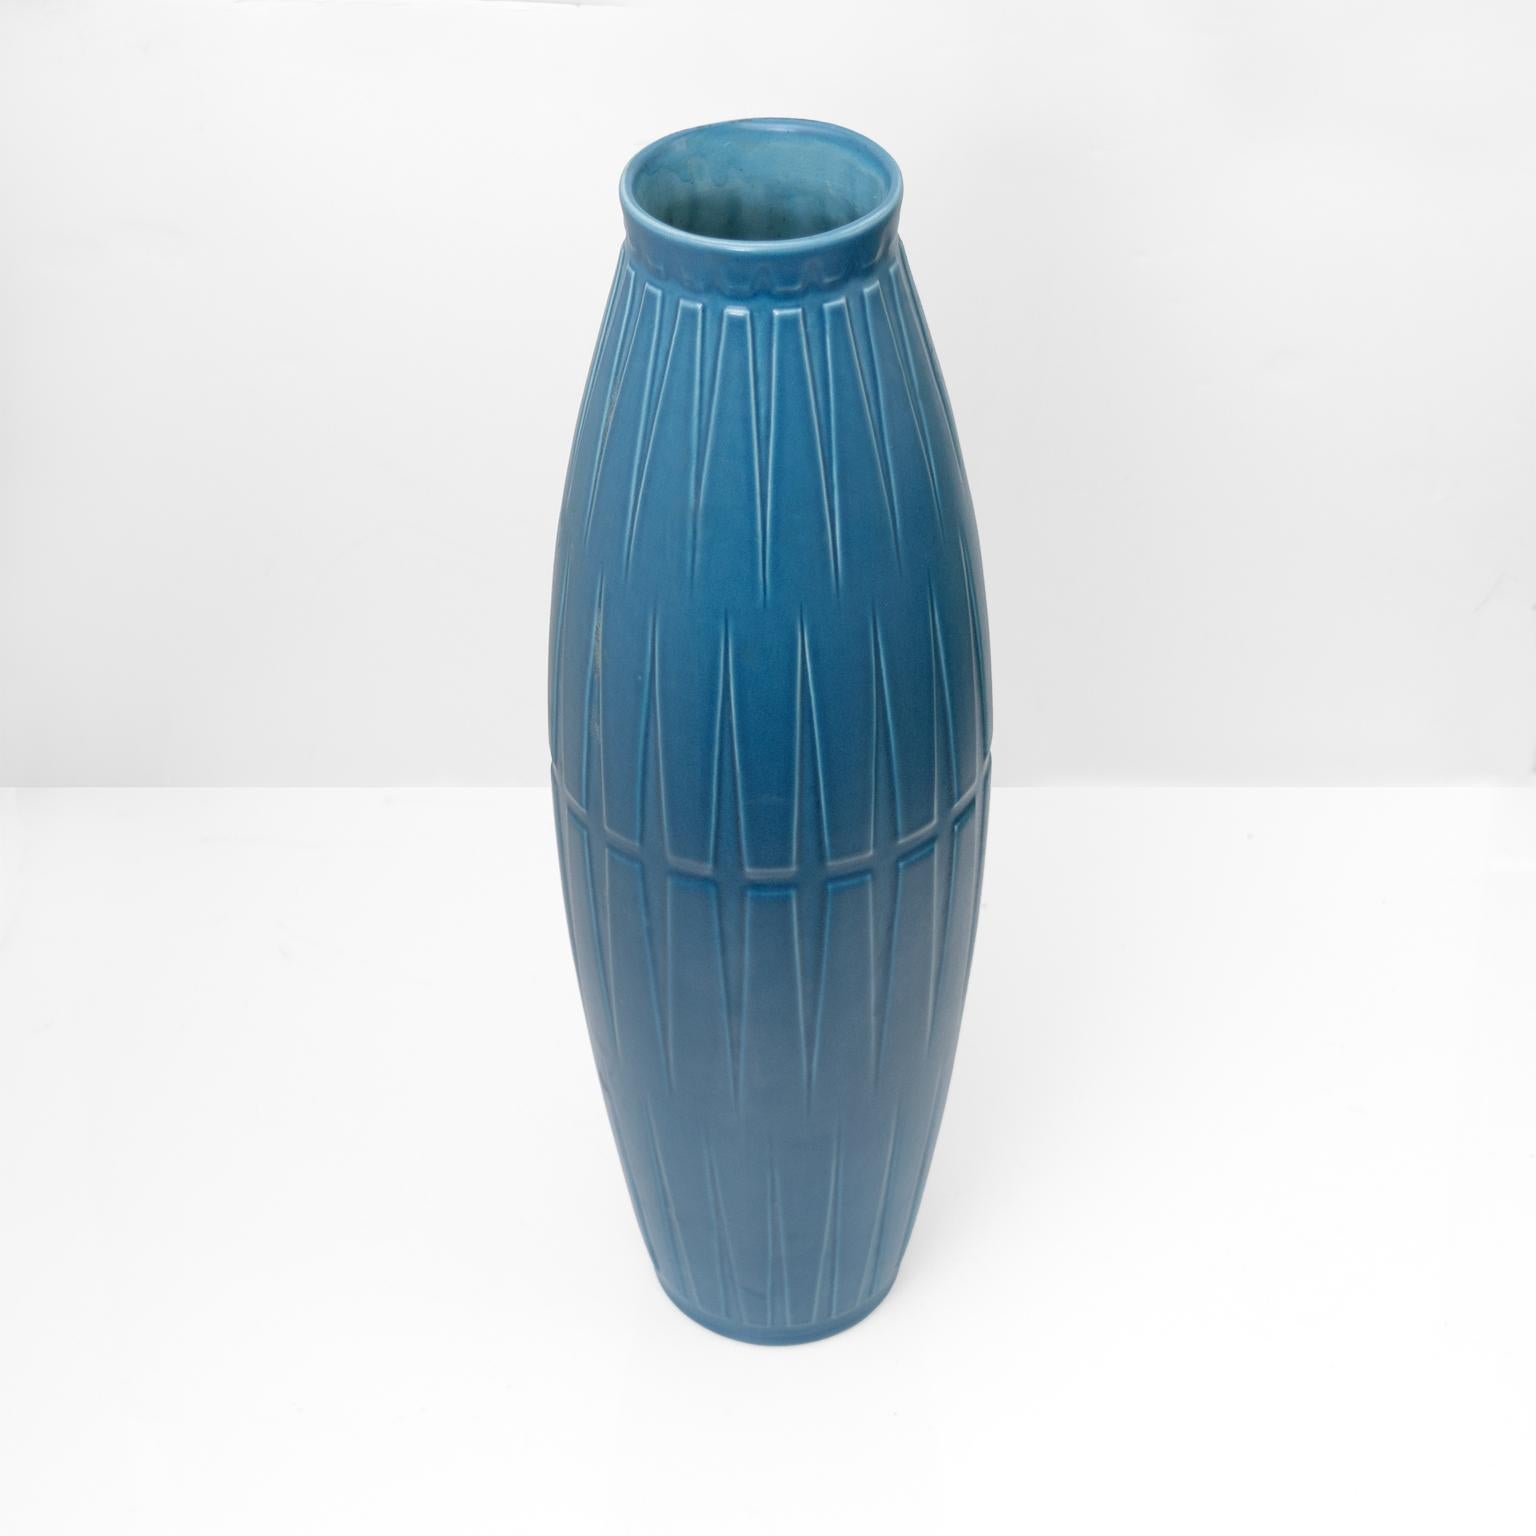 Un grand vase élégant en céramique bleue avec un motif géométrique en relief. Produit par Bo Fajans (1874-1967) Suède, vers la fin des années 1940

Hauteur : 19.25